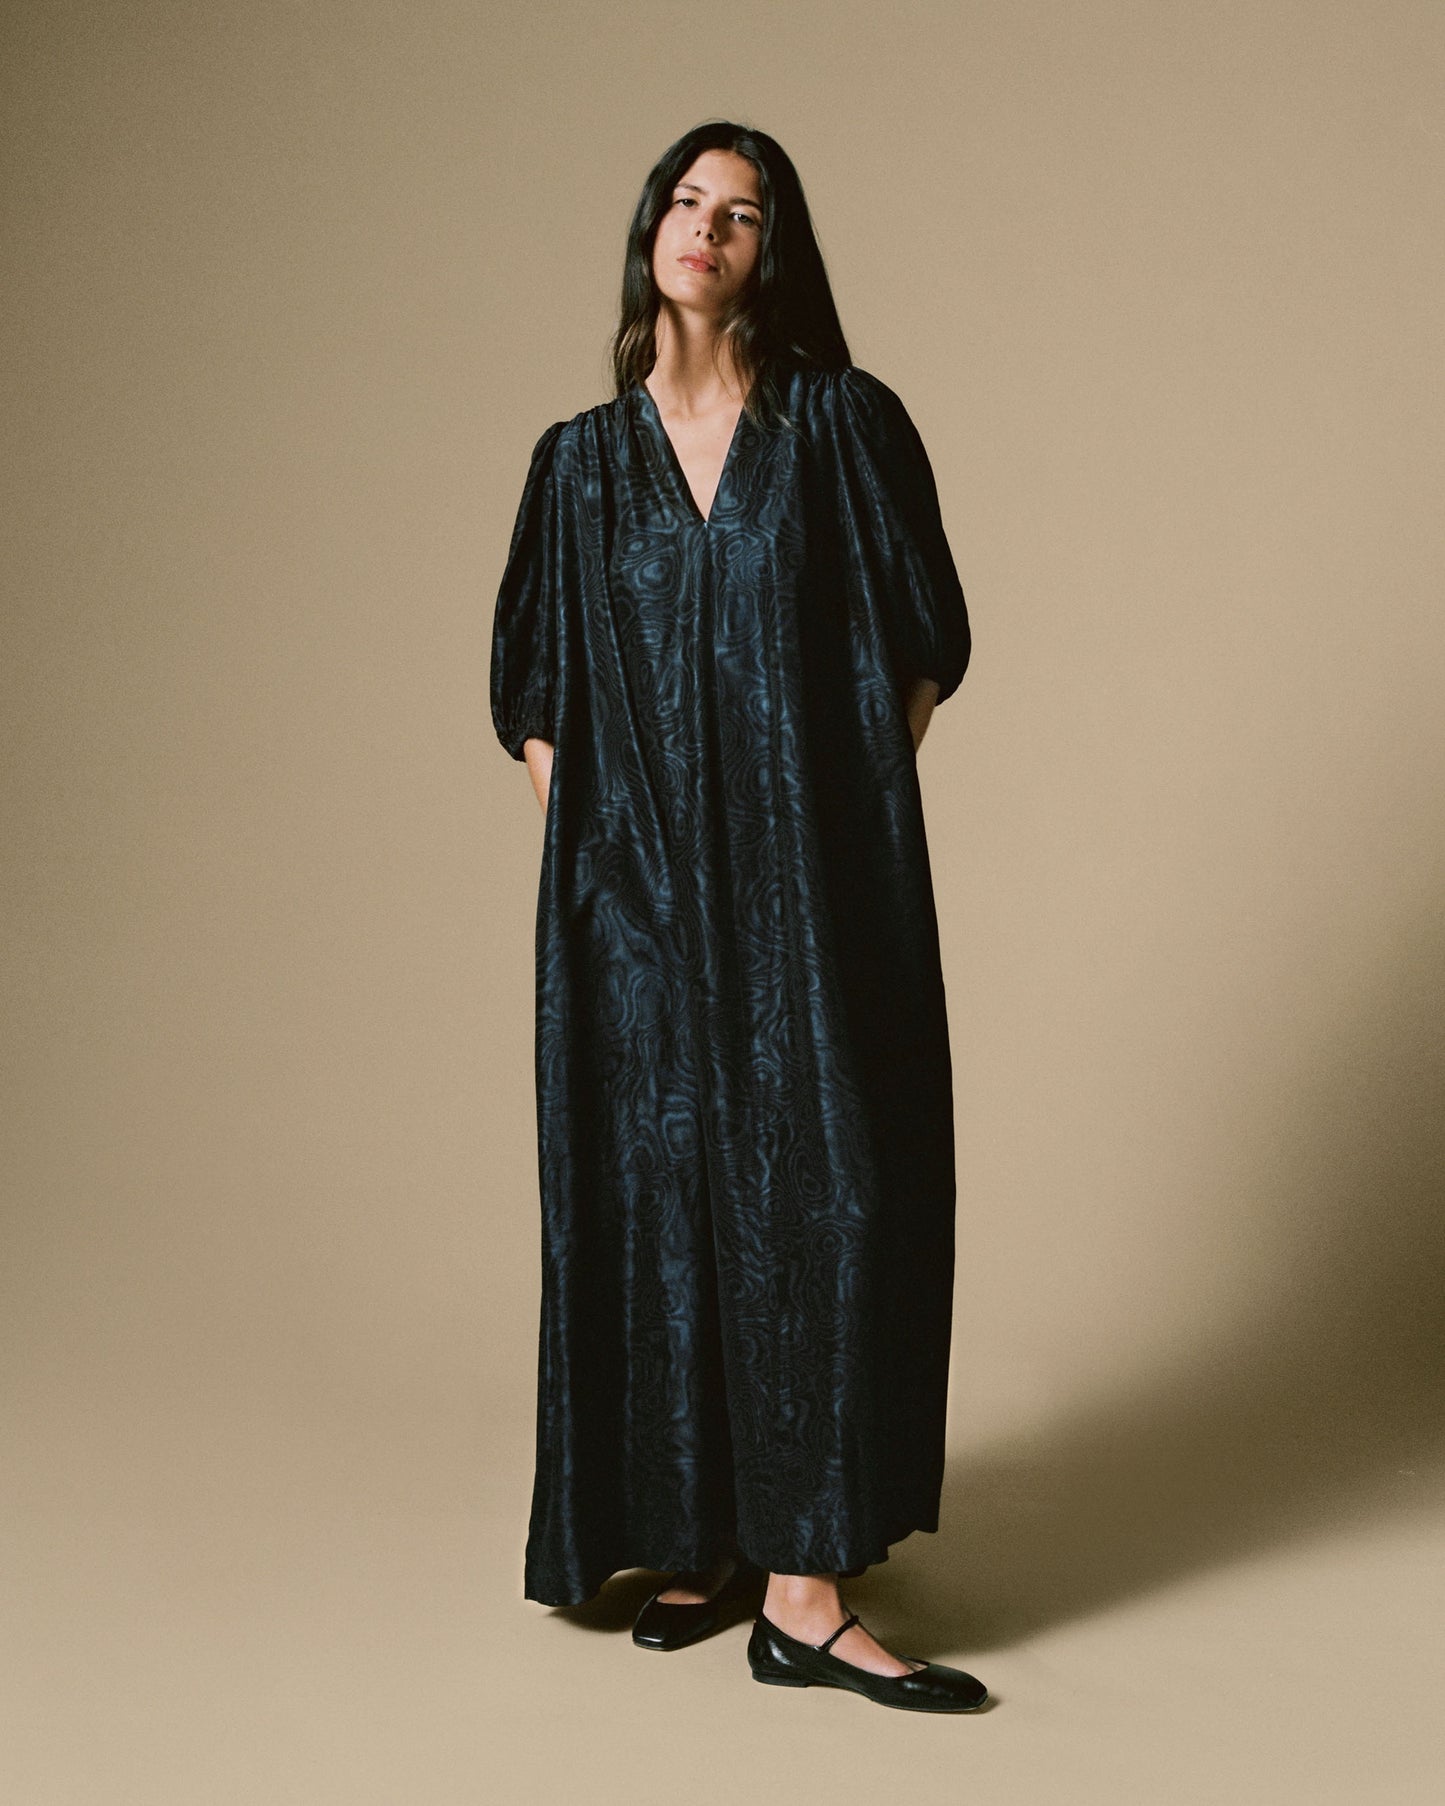 FALLON-robe-saintlaurentrivegauche-noir-bleu-satin-vintage-luxe-rare-mode-collection-femme00006